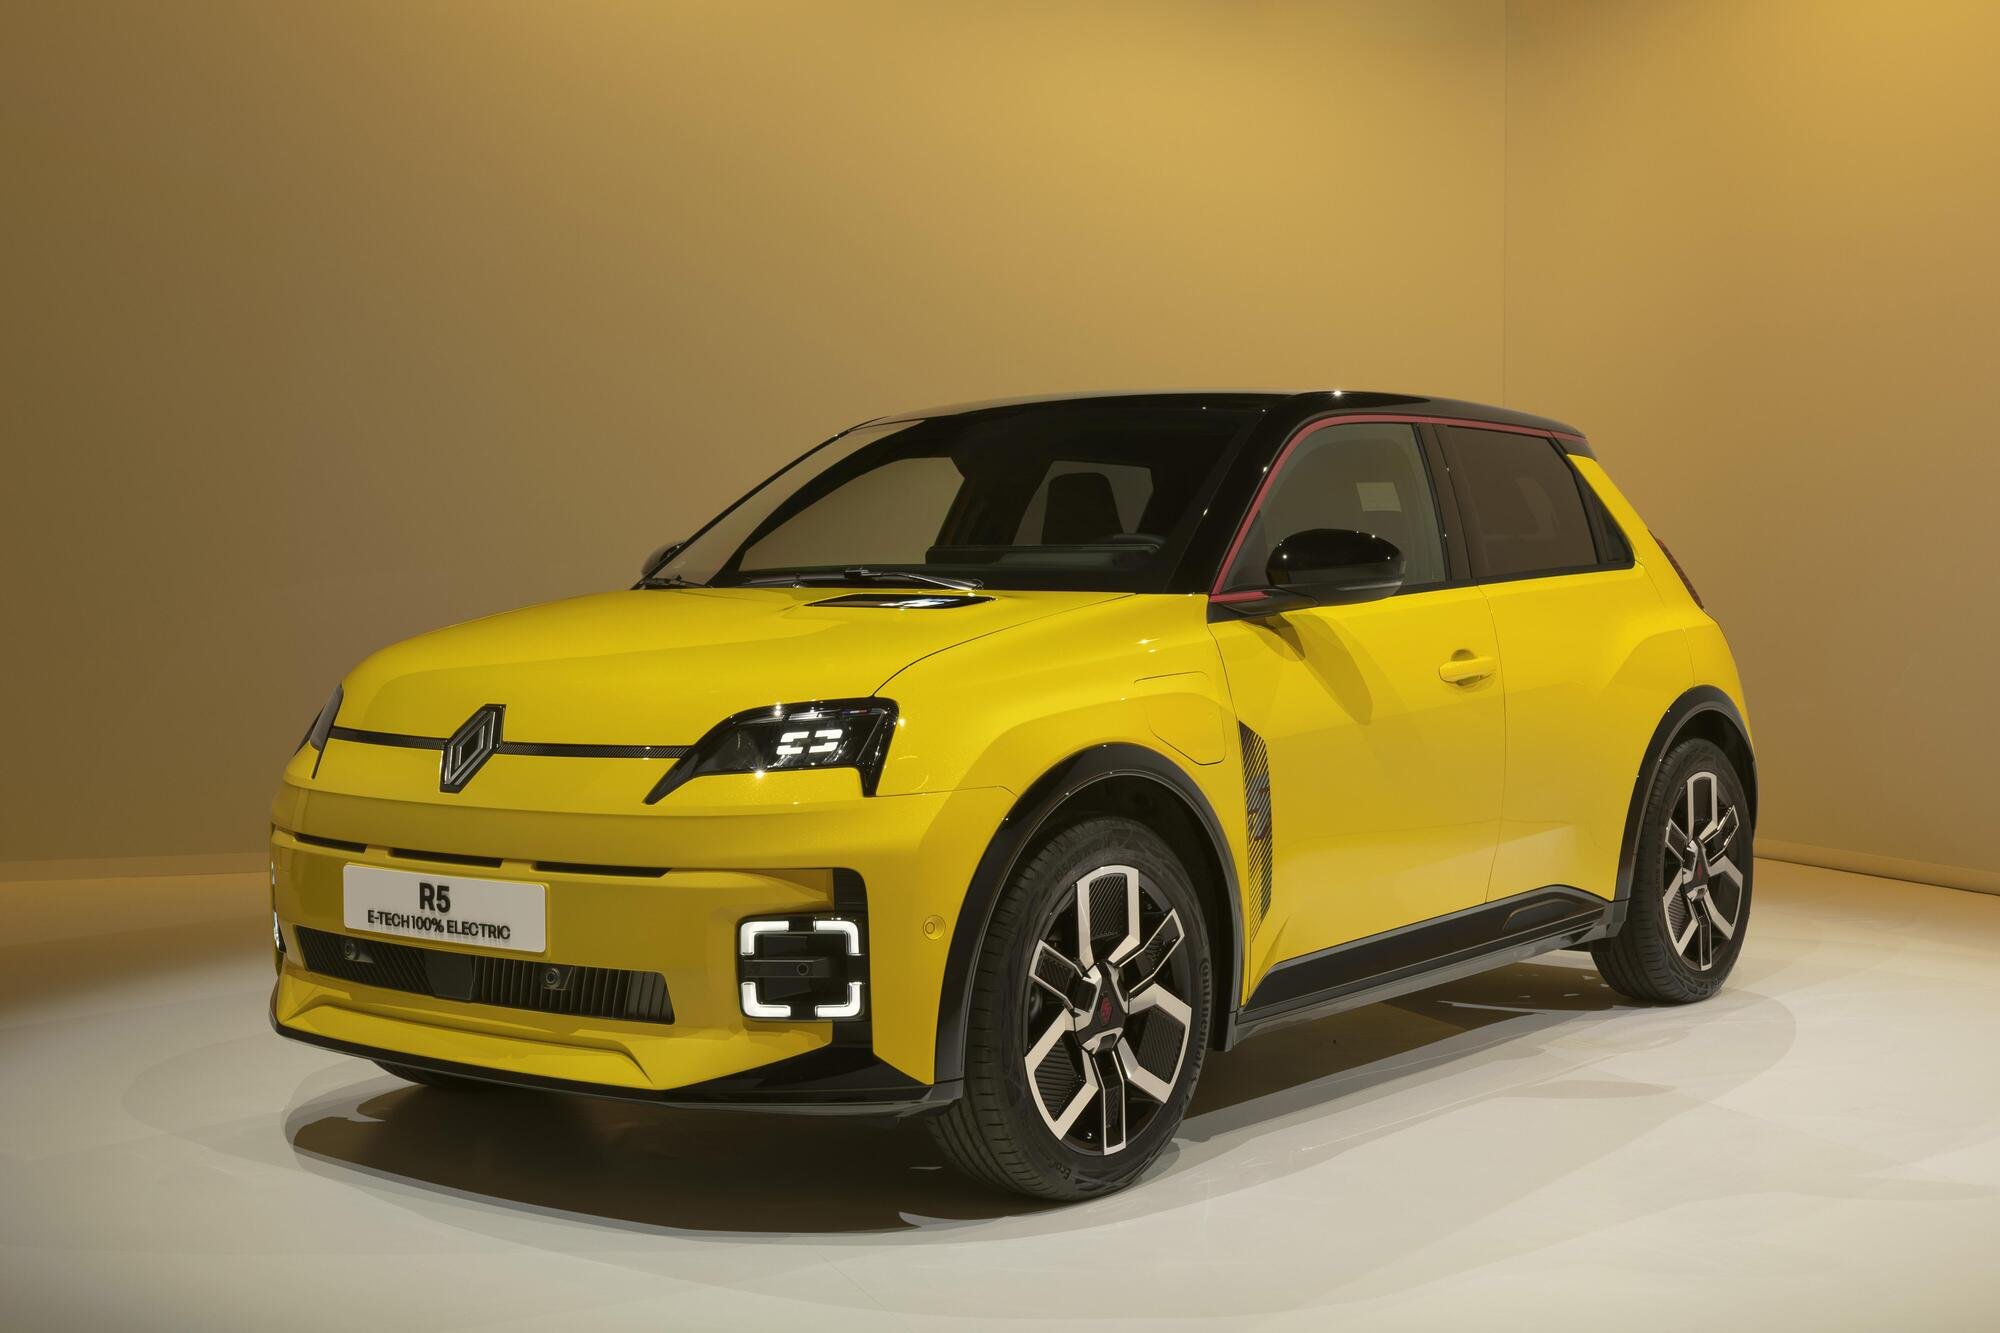 Renault 5 elettrica, ecco i prezzi italiani: quanto costa con e senza incentivi